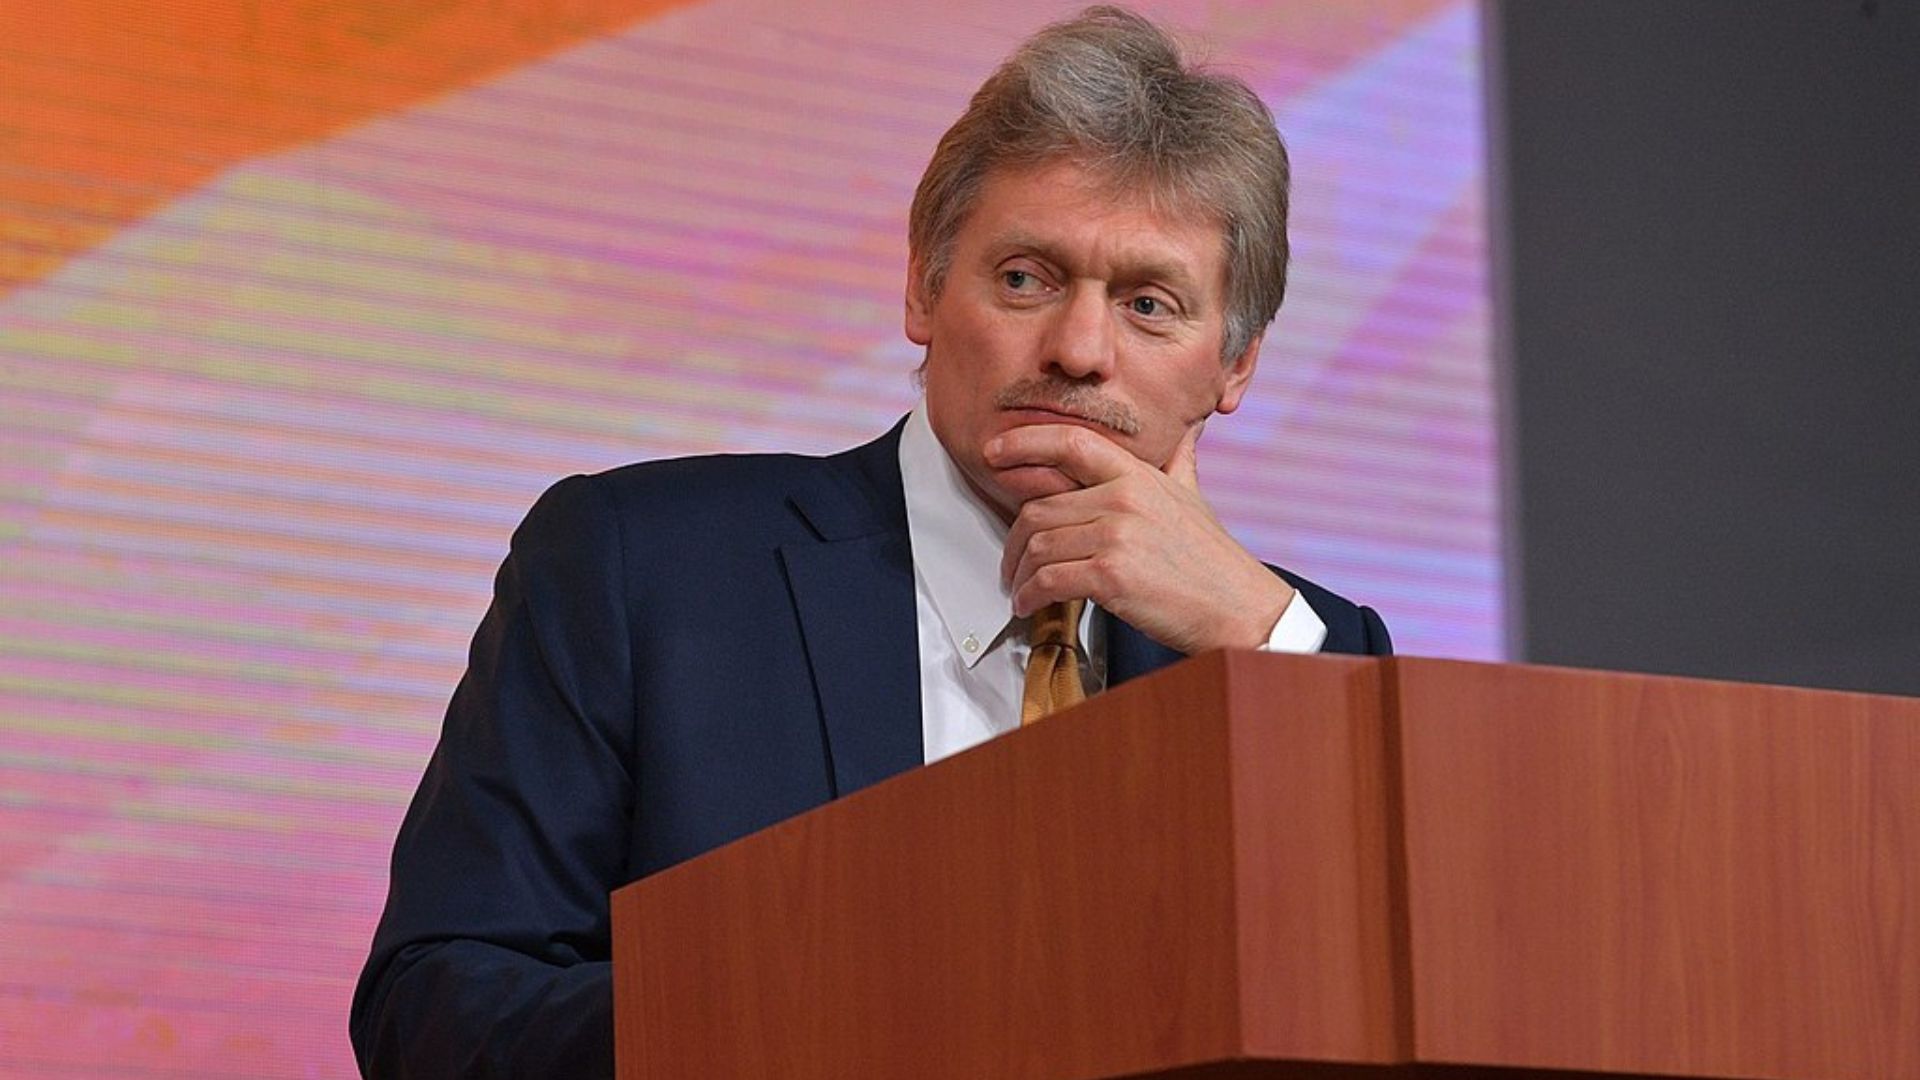 kreml oburzony słowami camerona. dał prawo ukrainie do użycia brytyjskiej broni w rosji